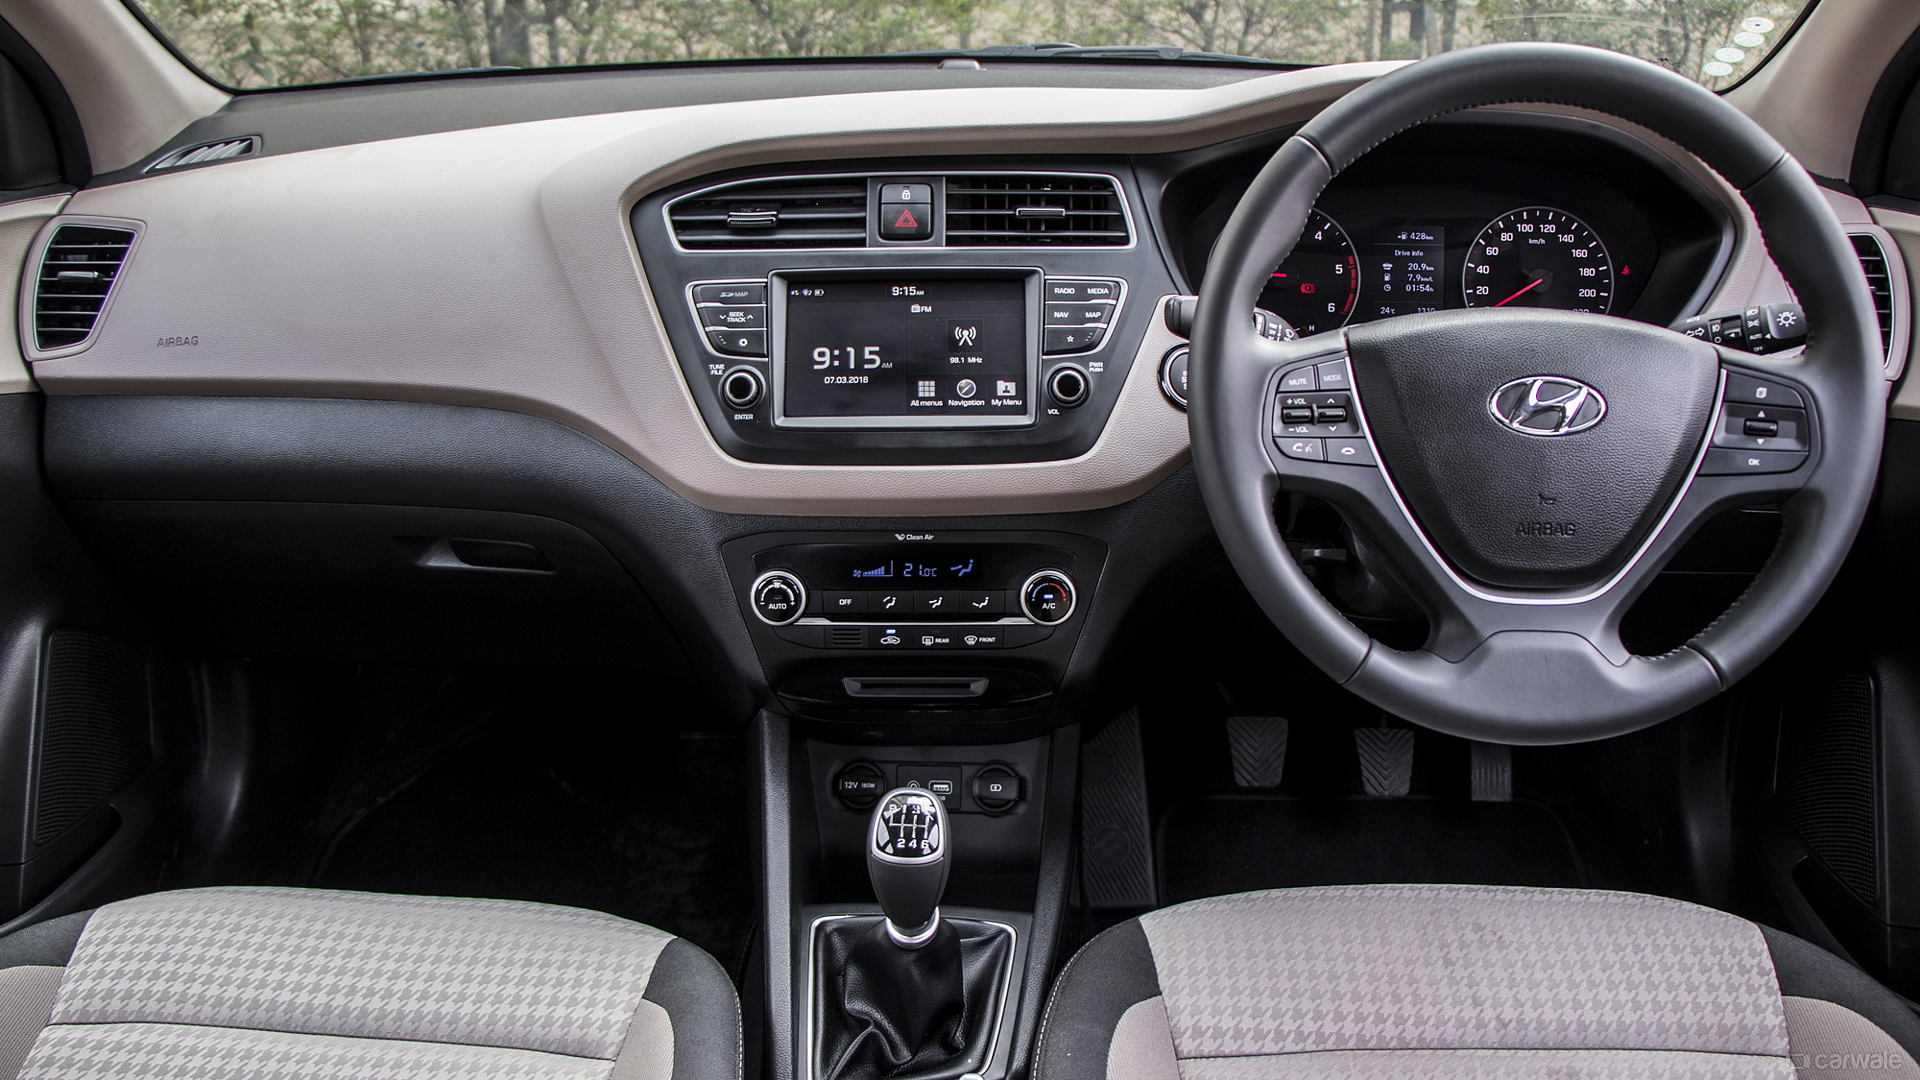 Interior Image, Hyundai Elite i20 Photo - CarWale